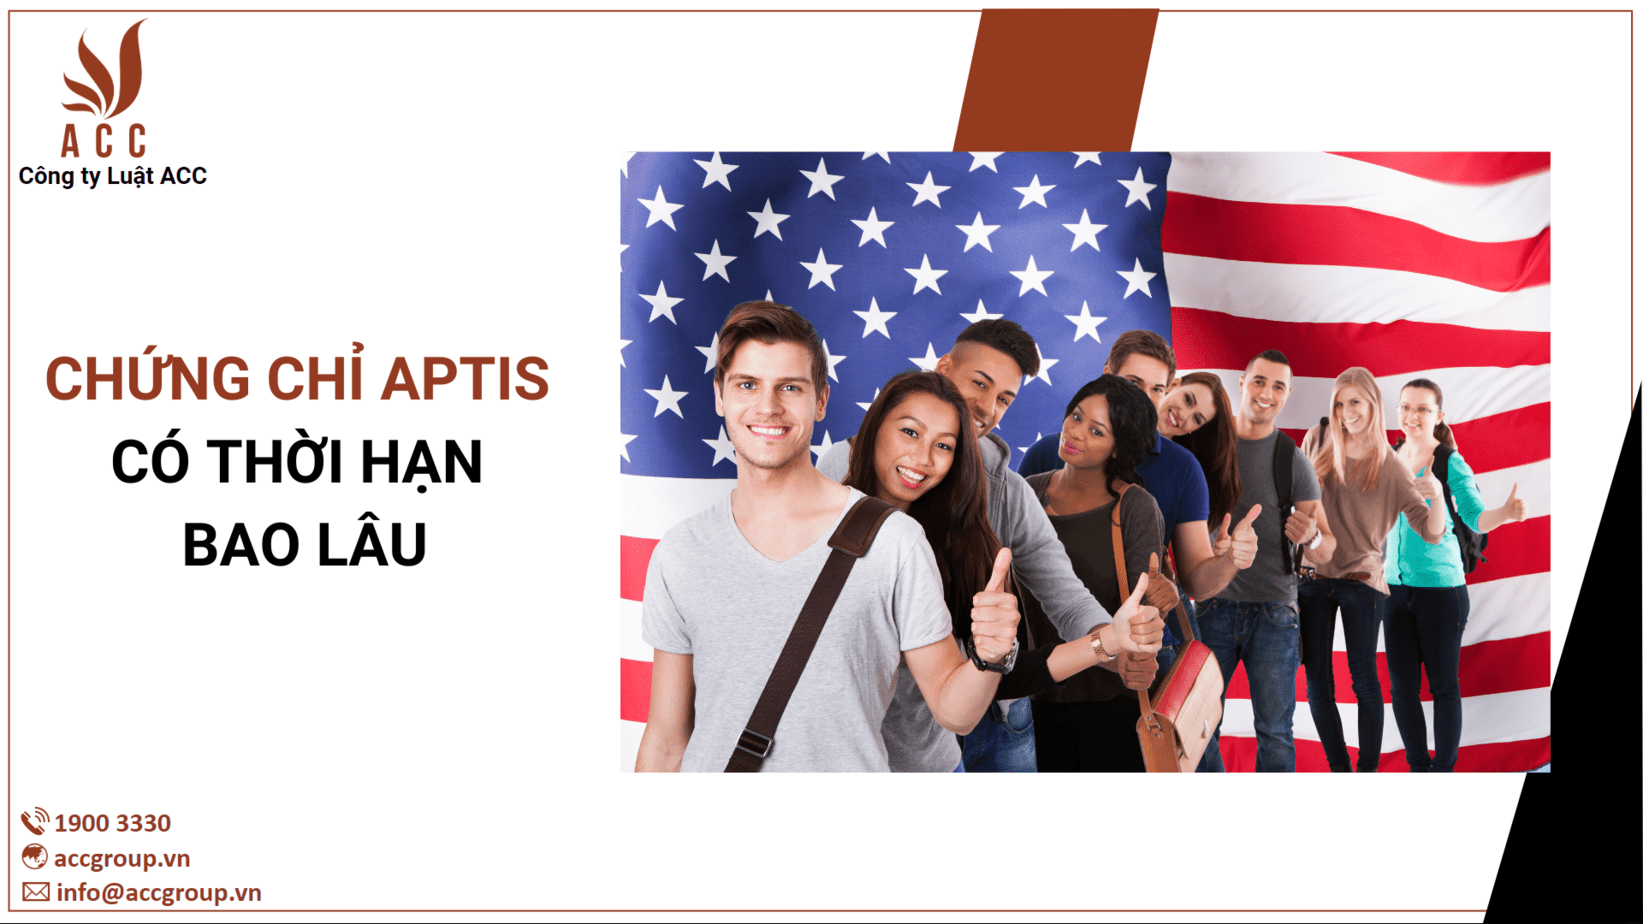 Chứng chỉ APTIS là một trong những chứng chỉ đánh giá trình độ tiếng Anh được nhiều người lựa chọn hiện nay. Với chứng chỉ này, bạn có thể thể hiện khả năng tiếng Anh tuyệt vời của mình và tiến bộ trong công việc hay học tập. Hãy xem ngay hình ảnh liên quan đến chứng chỉ APTIS để biết thêm chi tiết về nó!